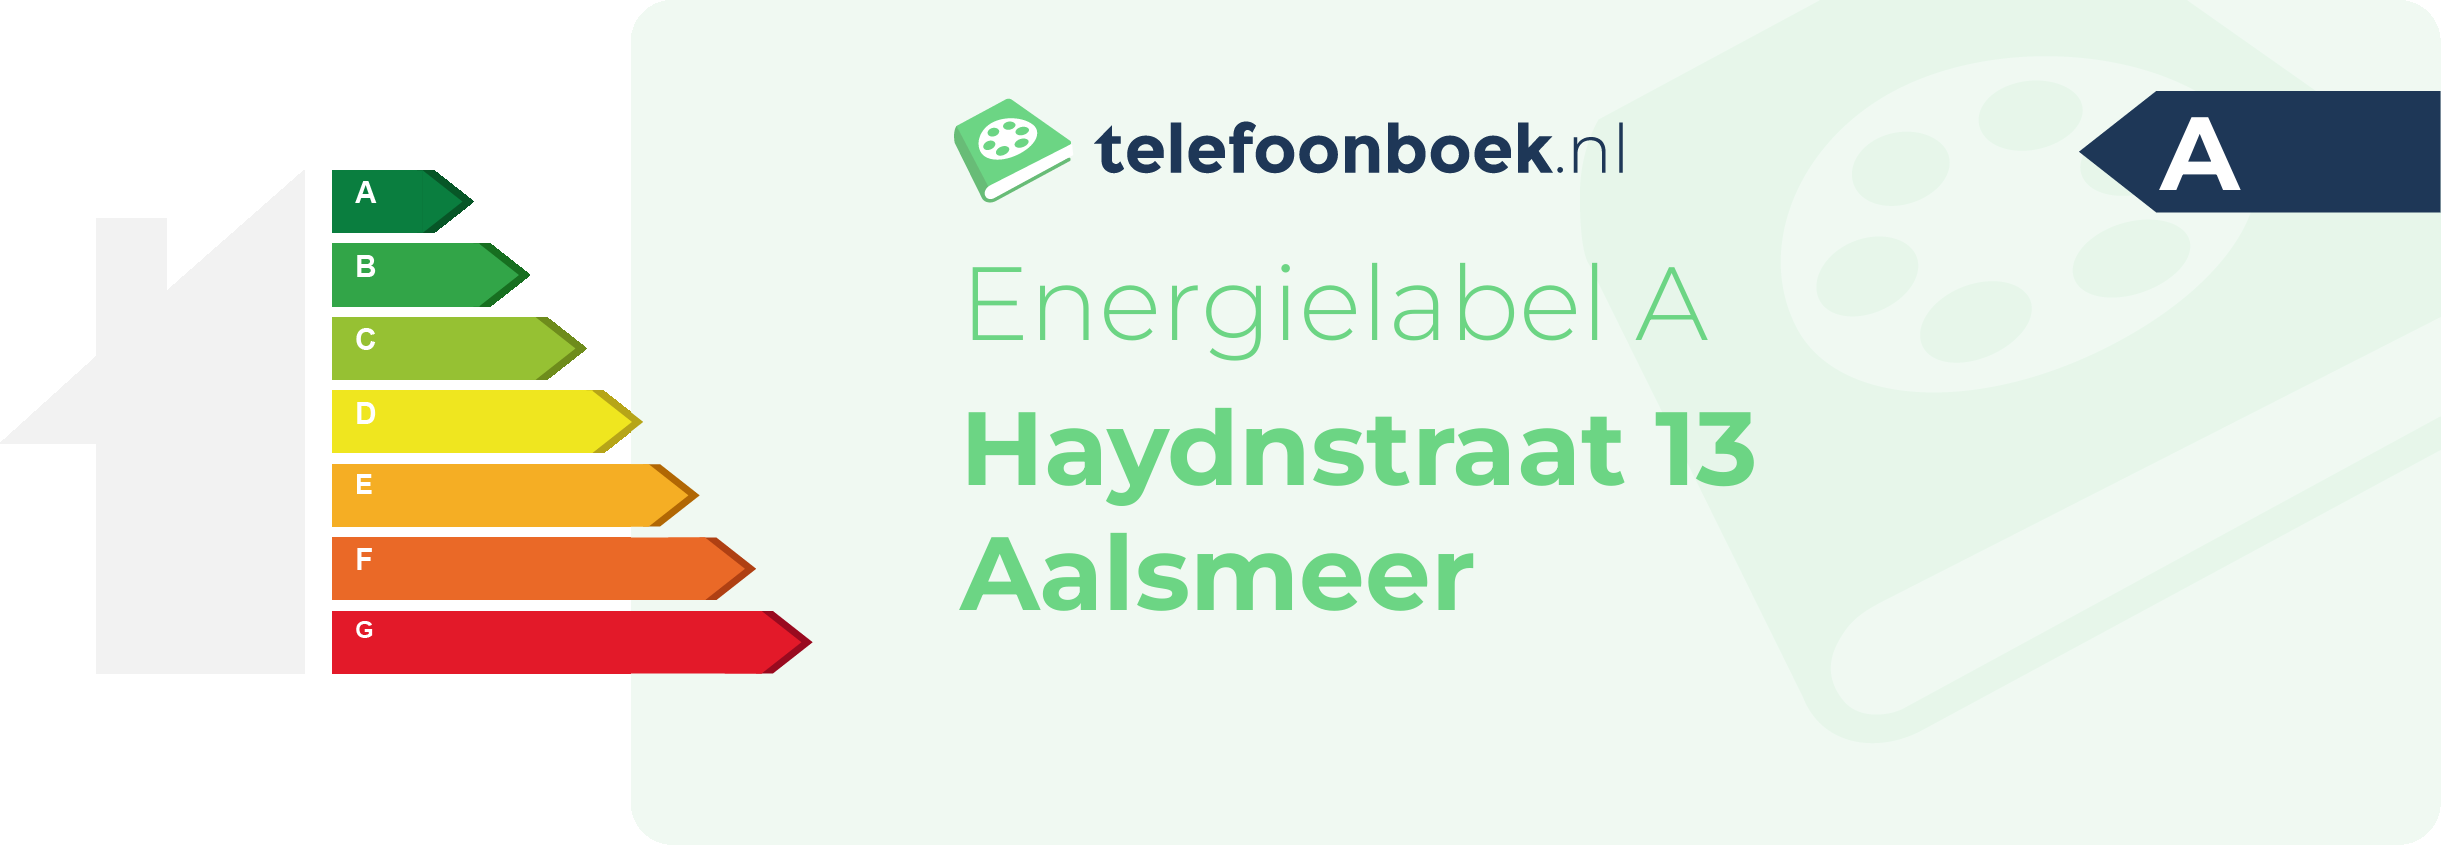 Energielabel Haydnstraat 13 Aalsmeer